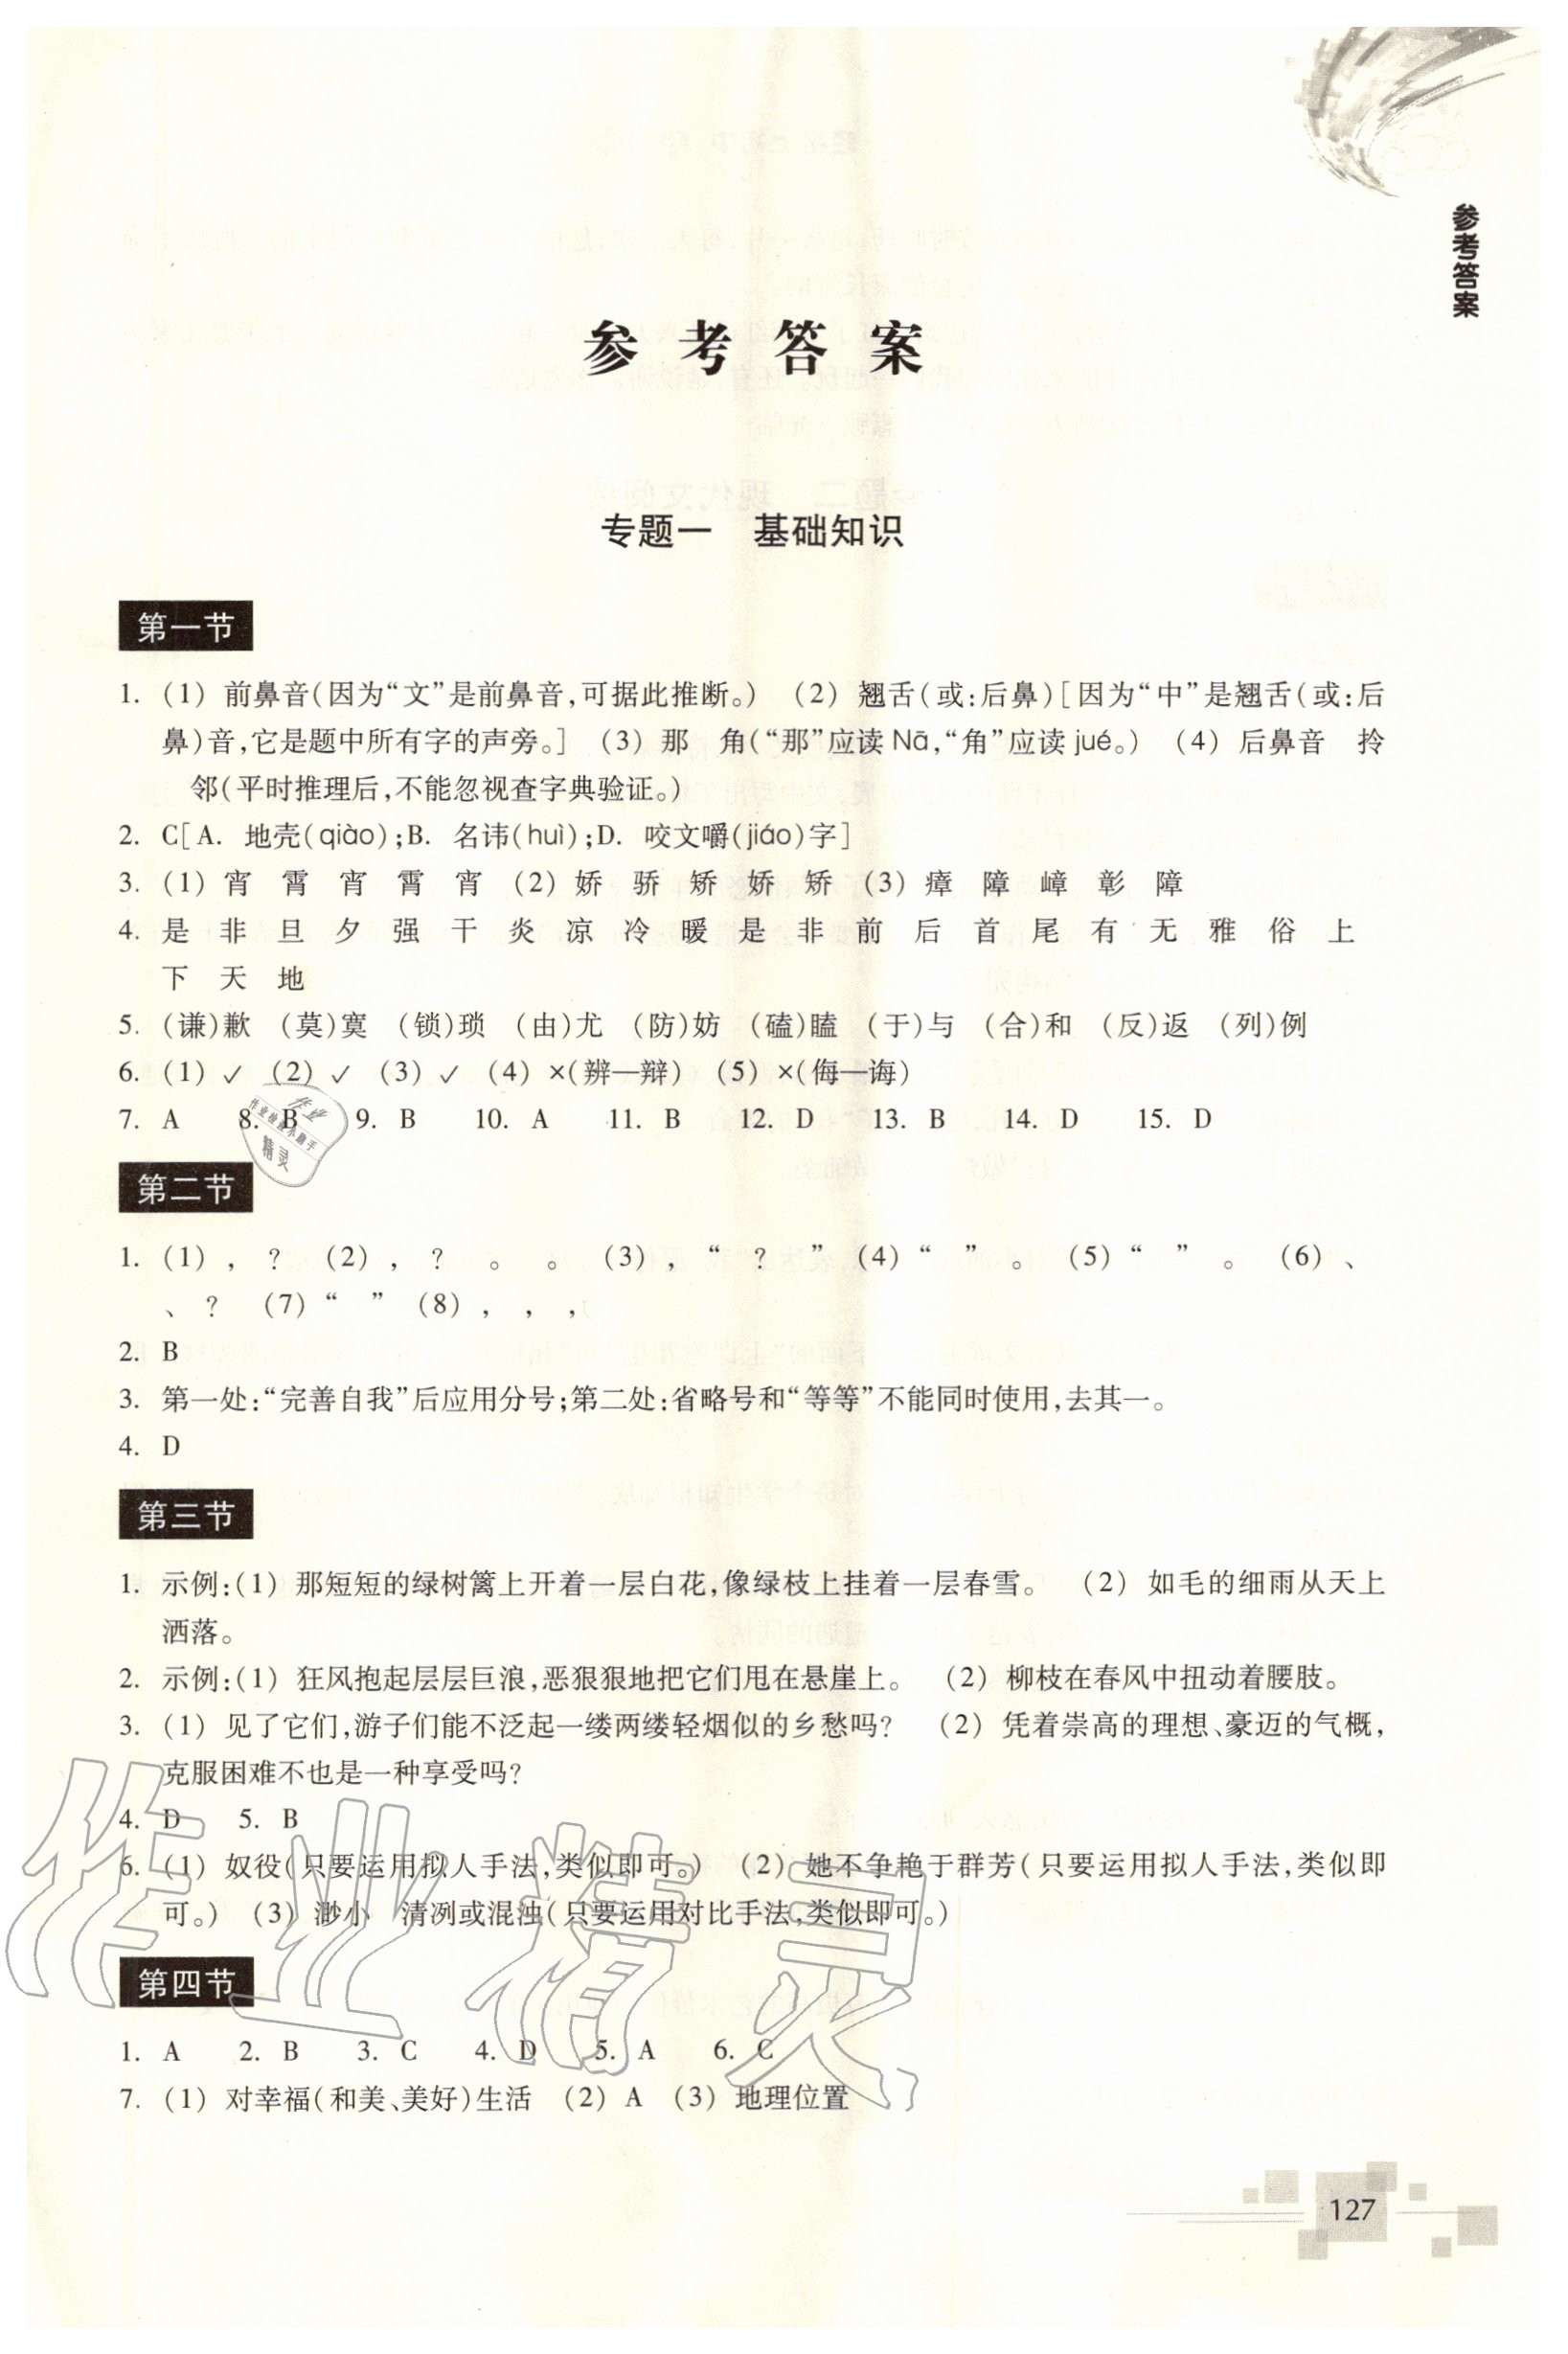 2020年轻松上初中语文暑假作业升级版浙江教育出版社 第1页